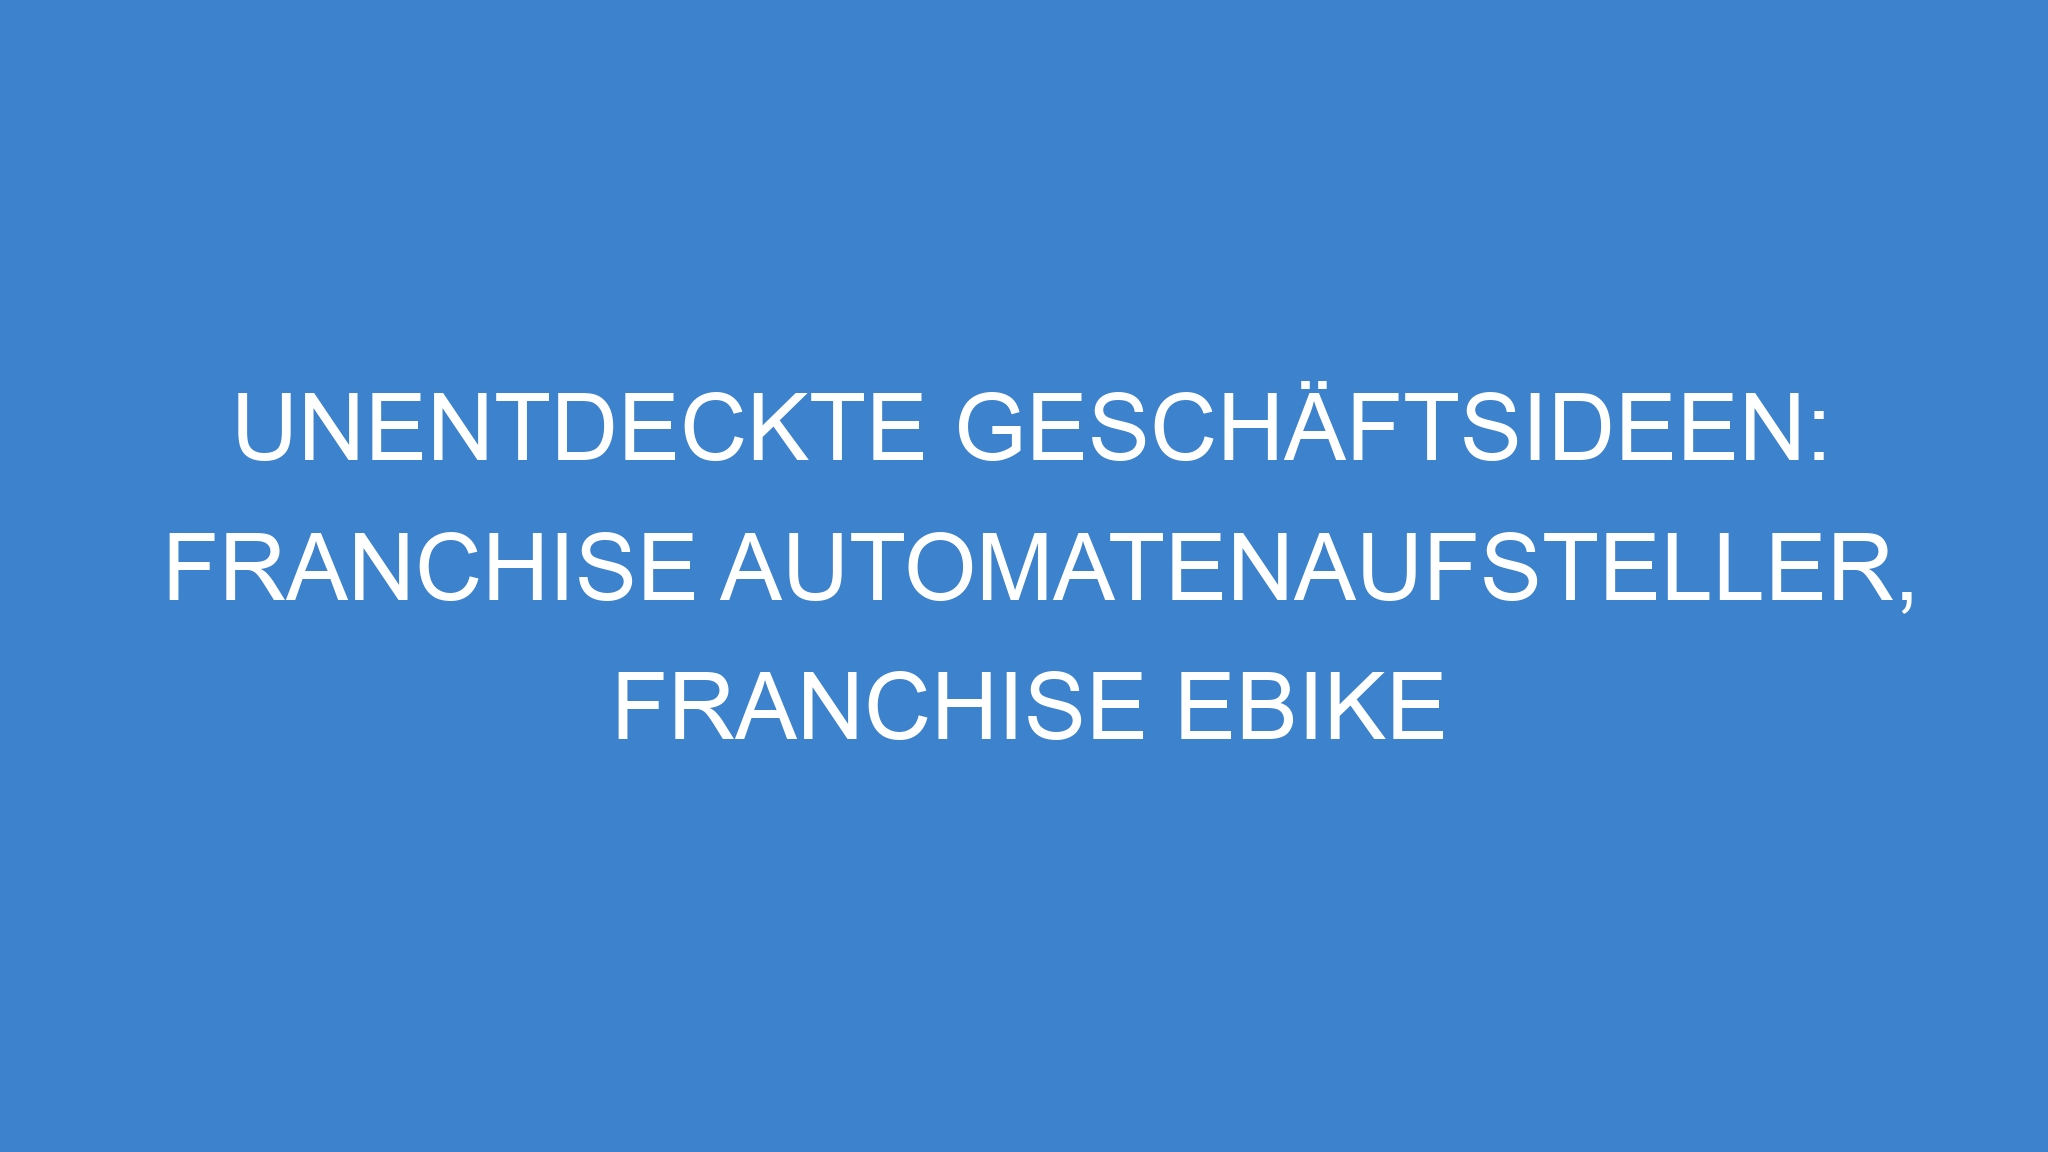 Unentdeckte Geschäftsideen: Franchise Automatenaufsteller, Franchise eBike